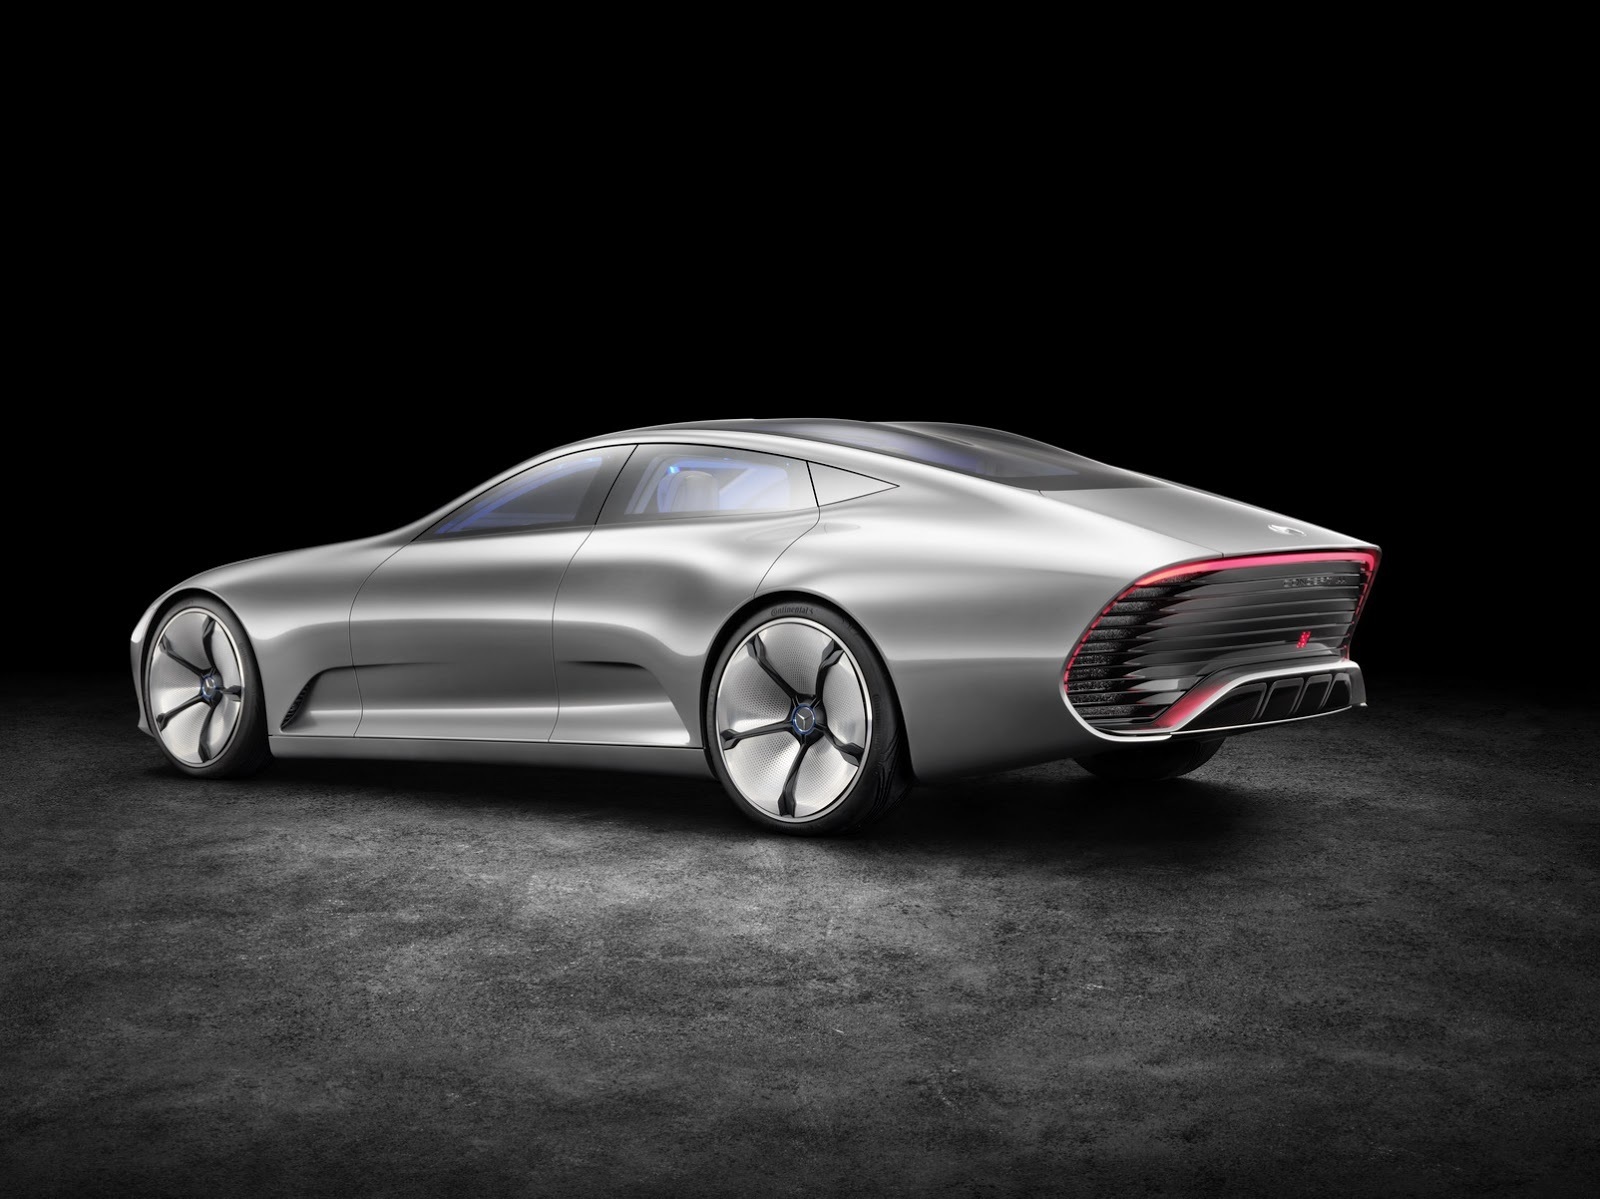 Mercedes Concept IAA